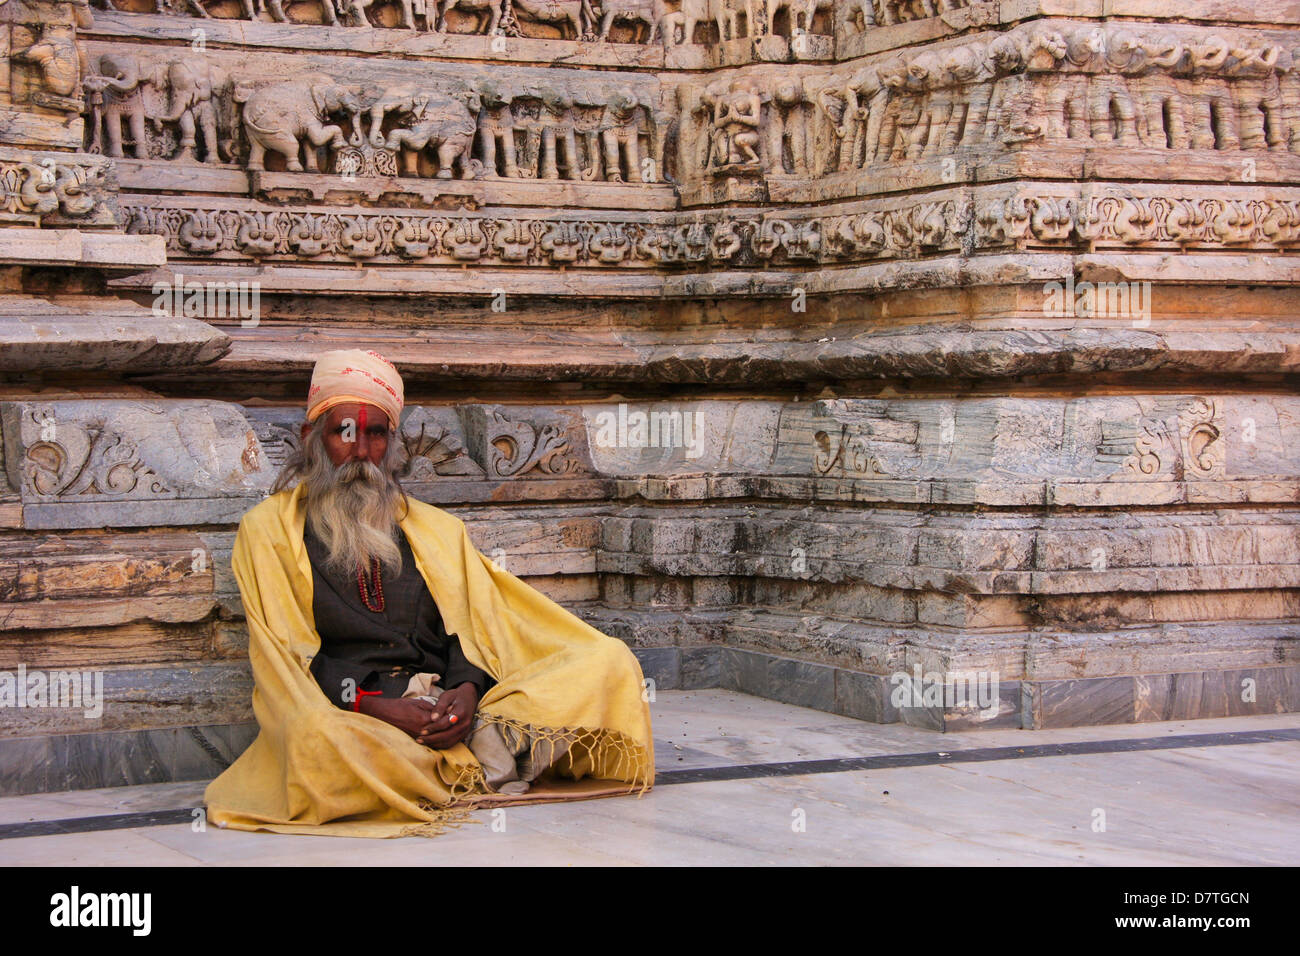 Indian man sitting at Jagdish temple, Udaipur, Rajasthan, India Stock Photo